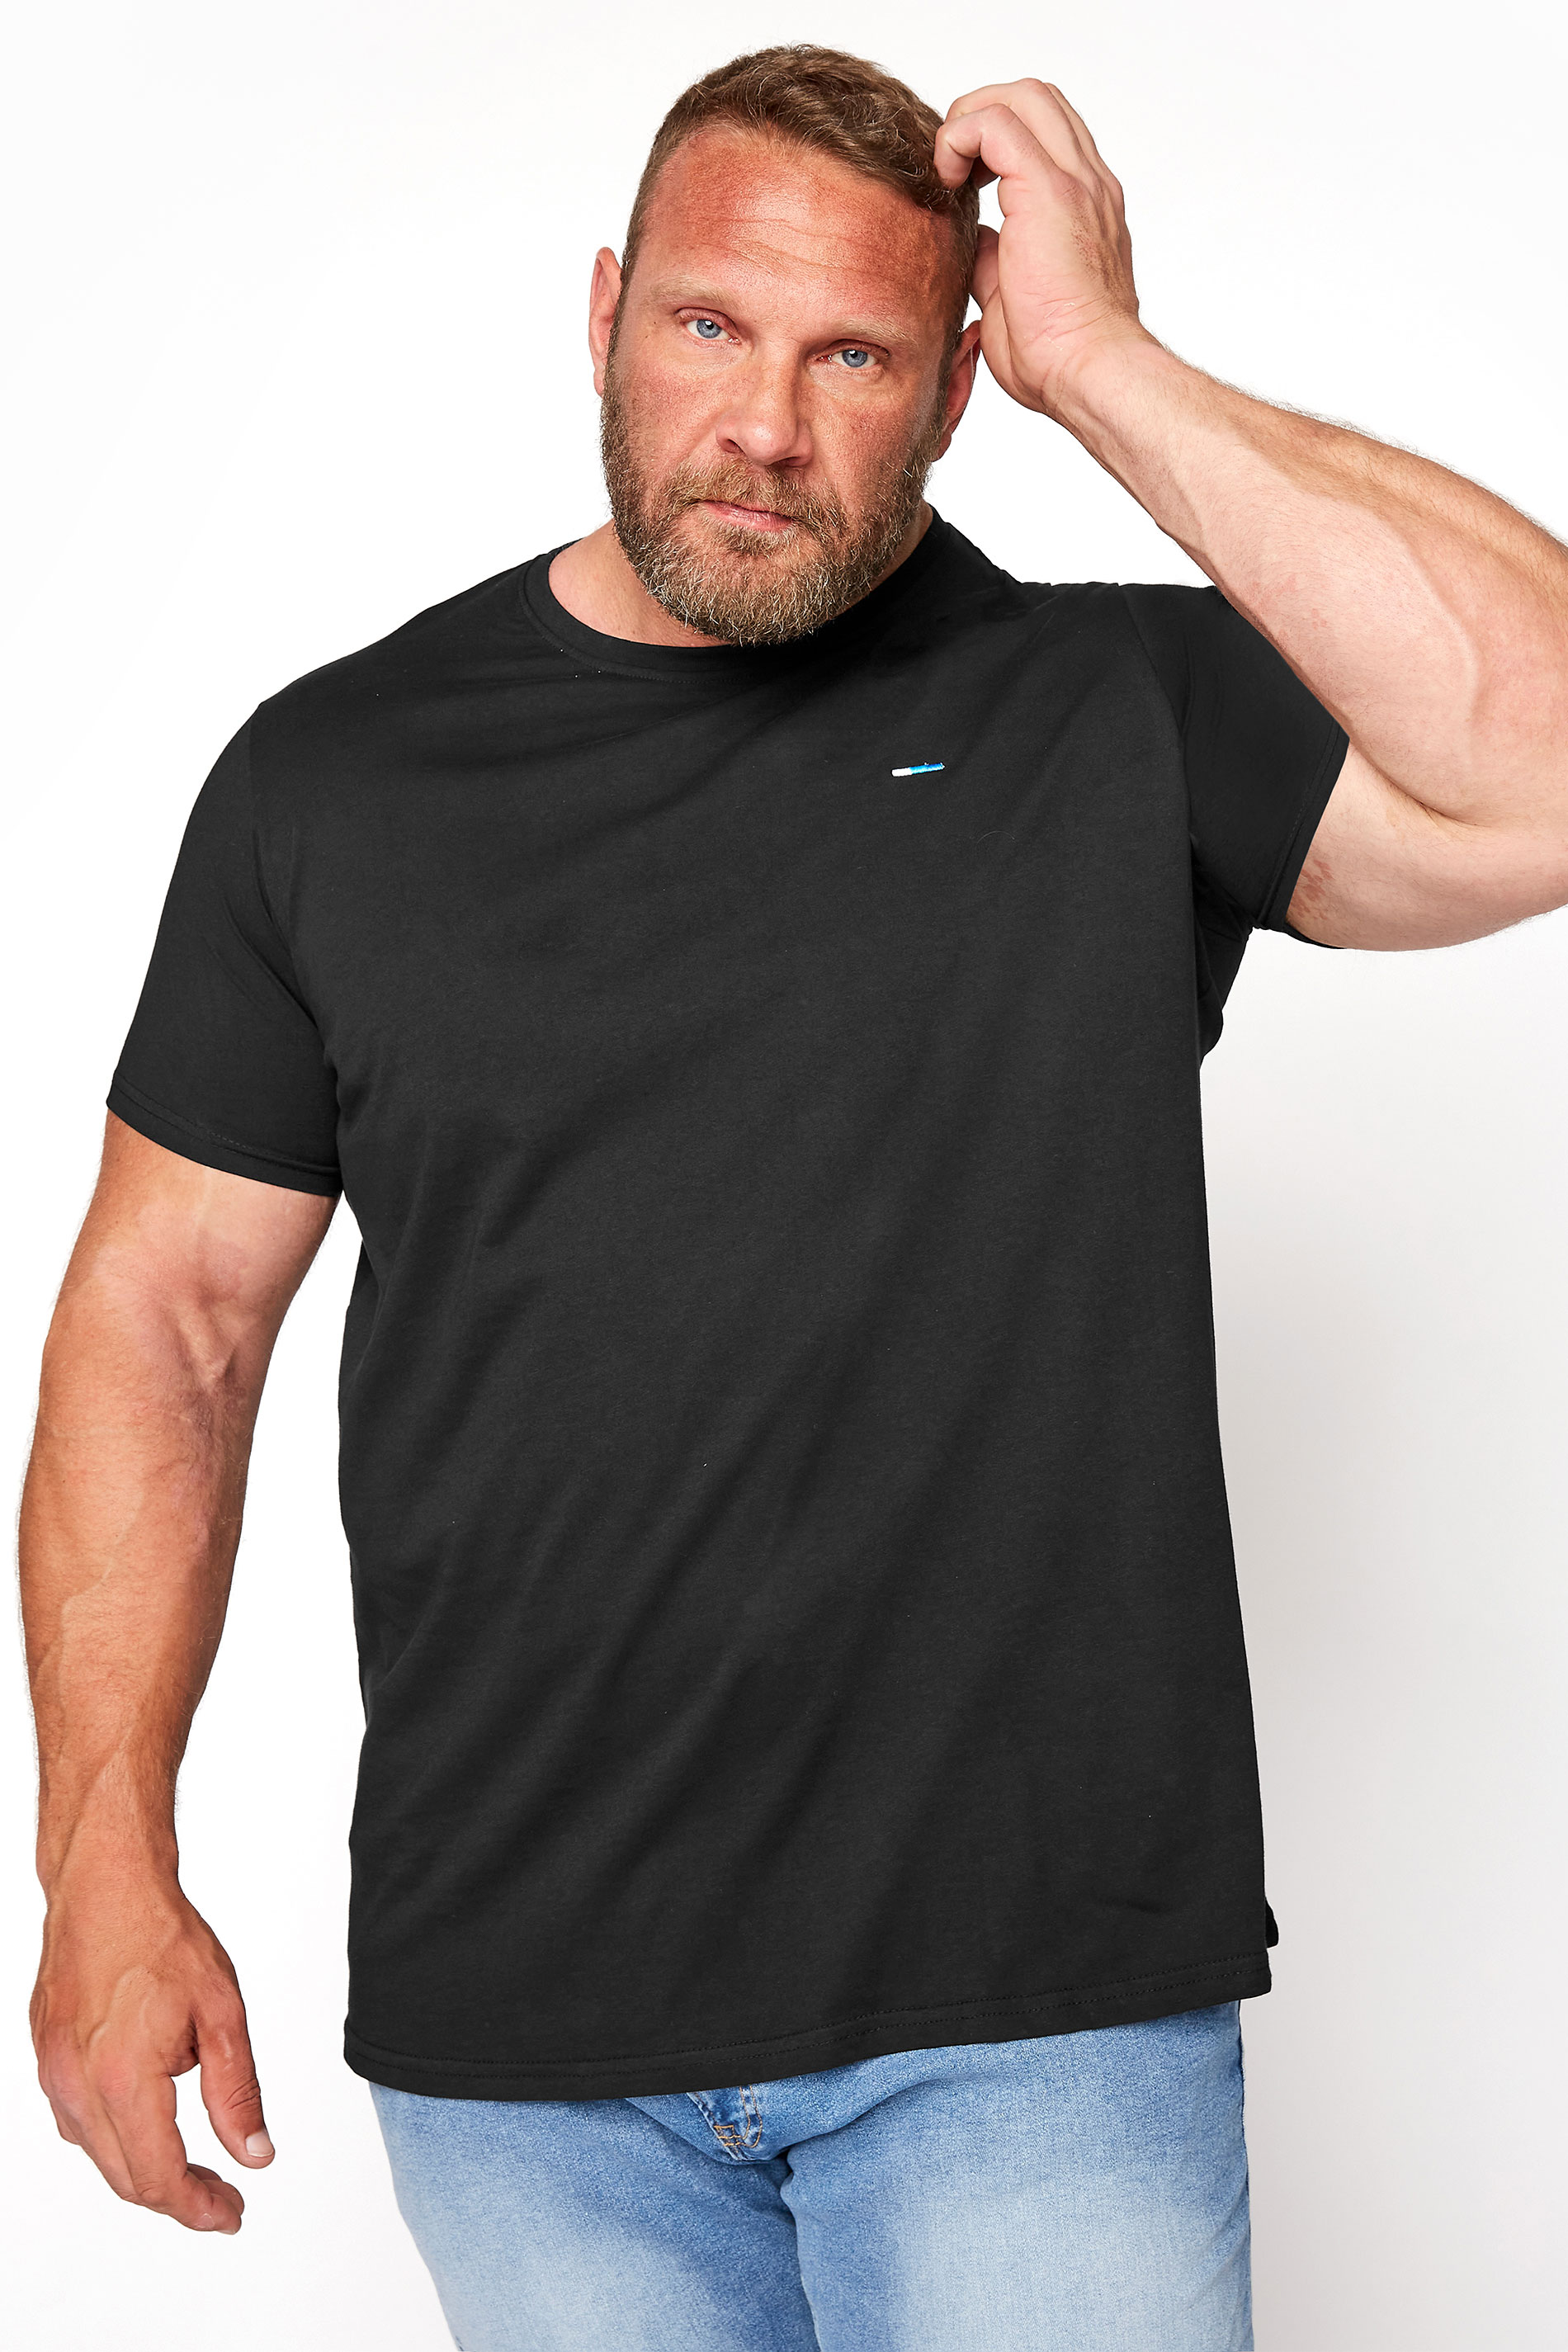 BadRhino Black Core T-Shirt | BadRhino 1